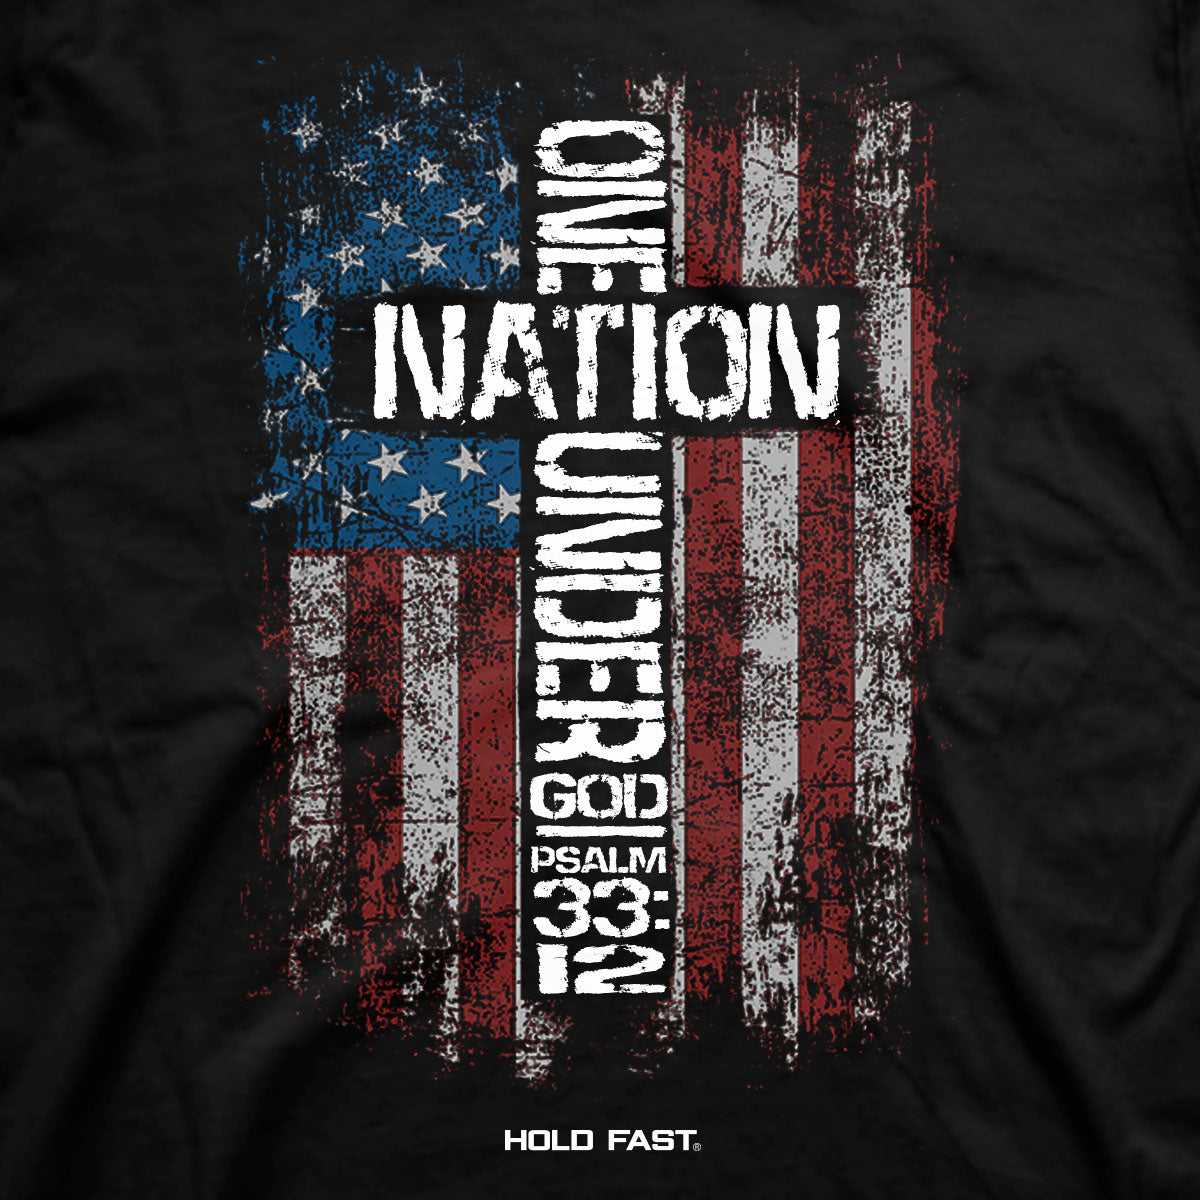 One Nation Under God Mens T-Shirt